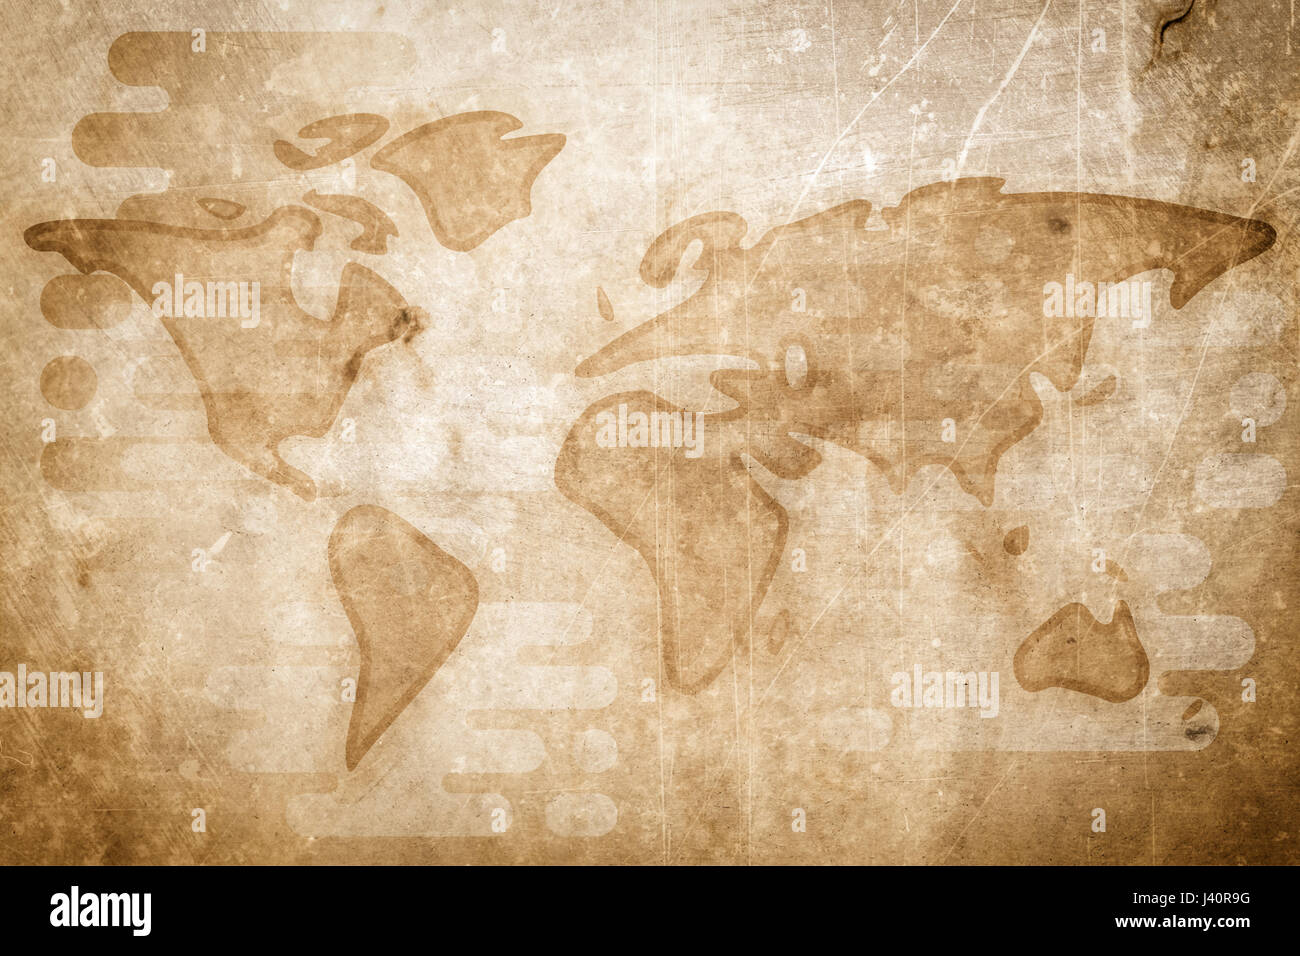 World map cartoon textured flat illustration Stock Photo